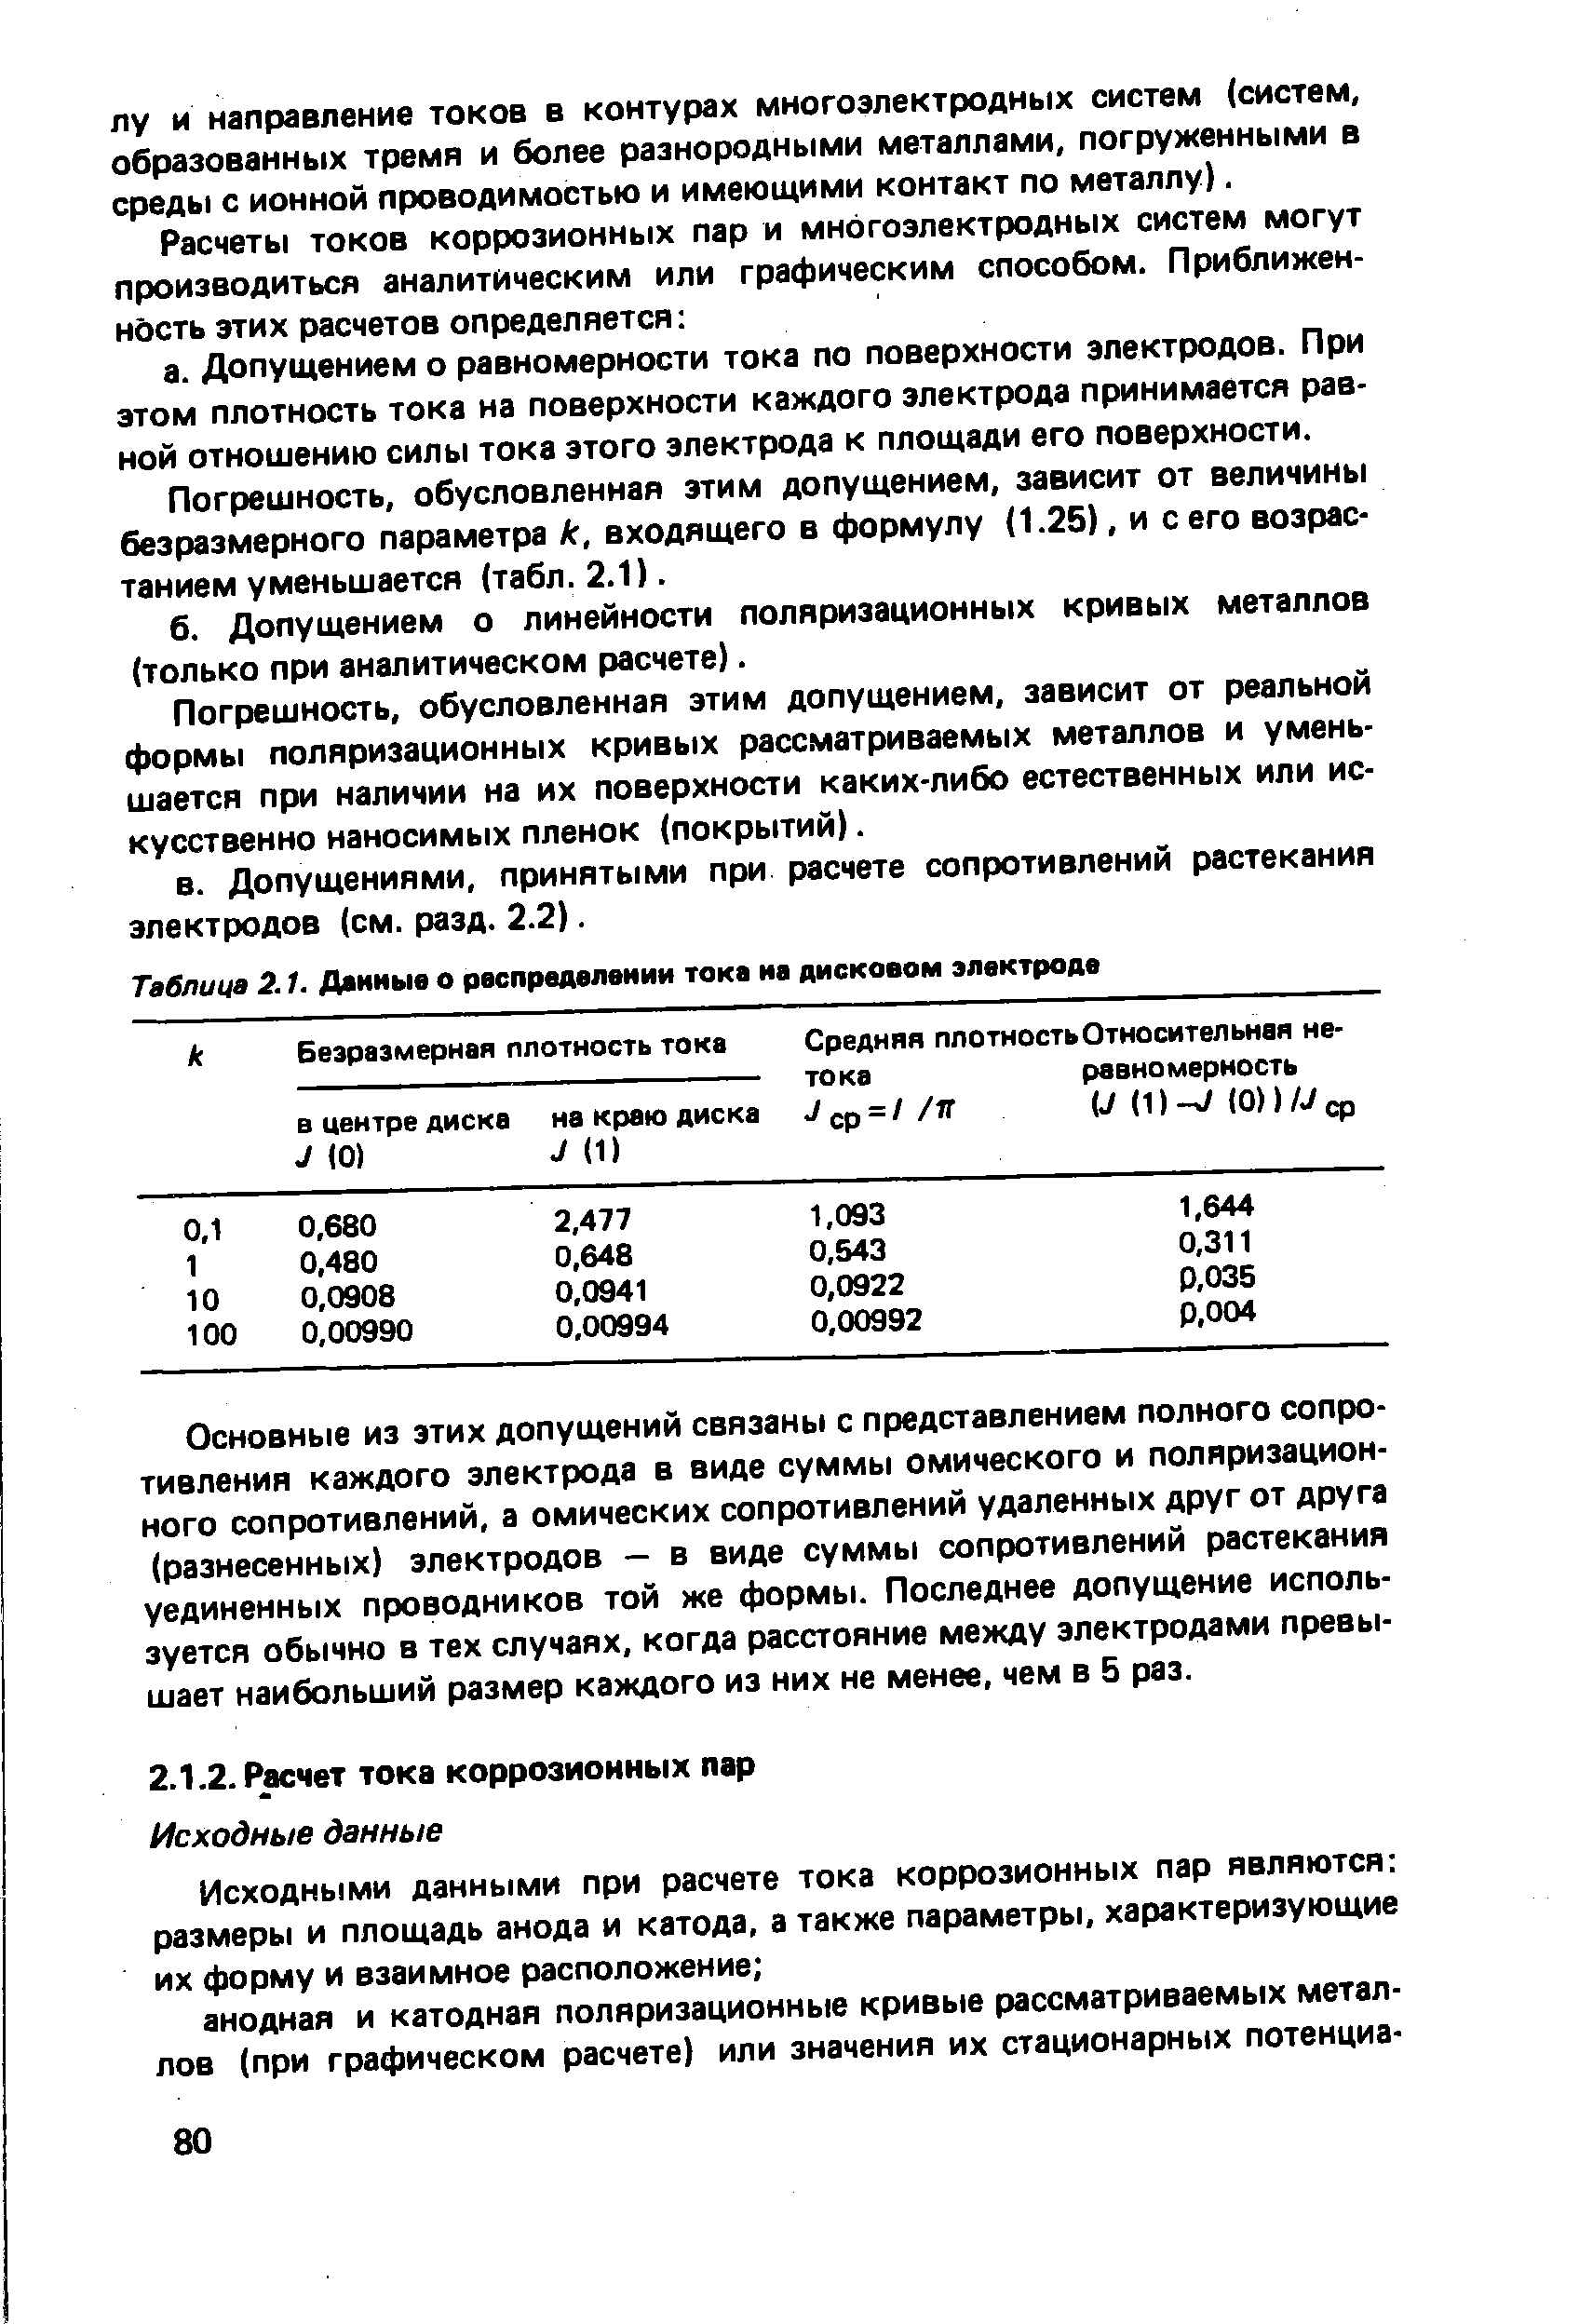 Таблица 2.1. Данные о рвспределвнии тока на дисковом электроде
